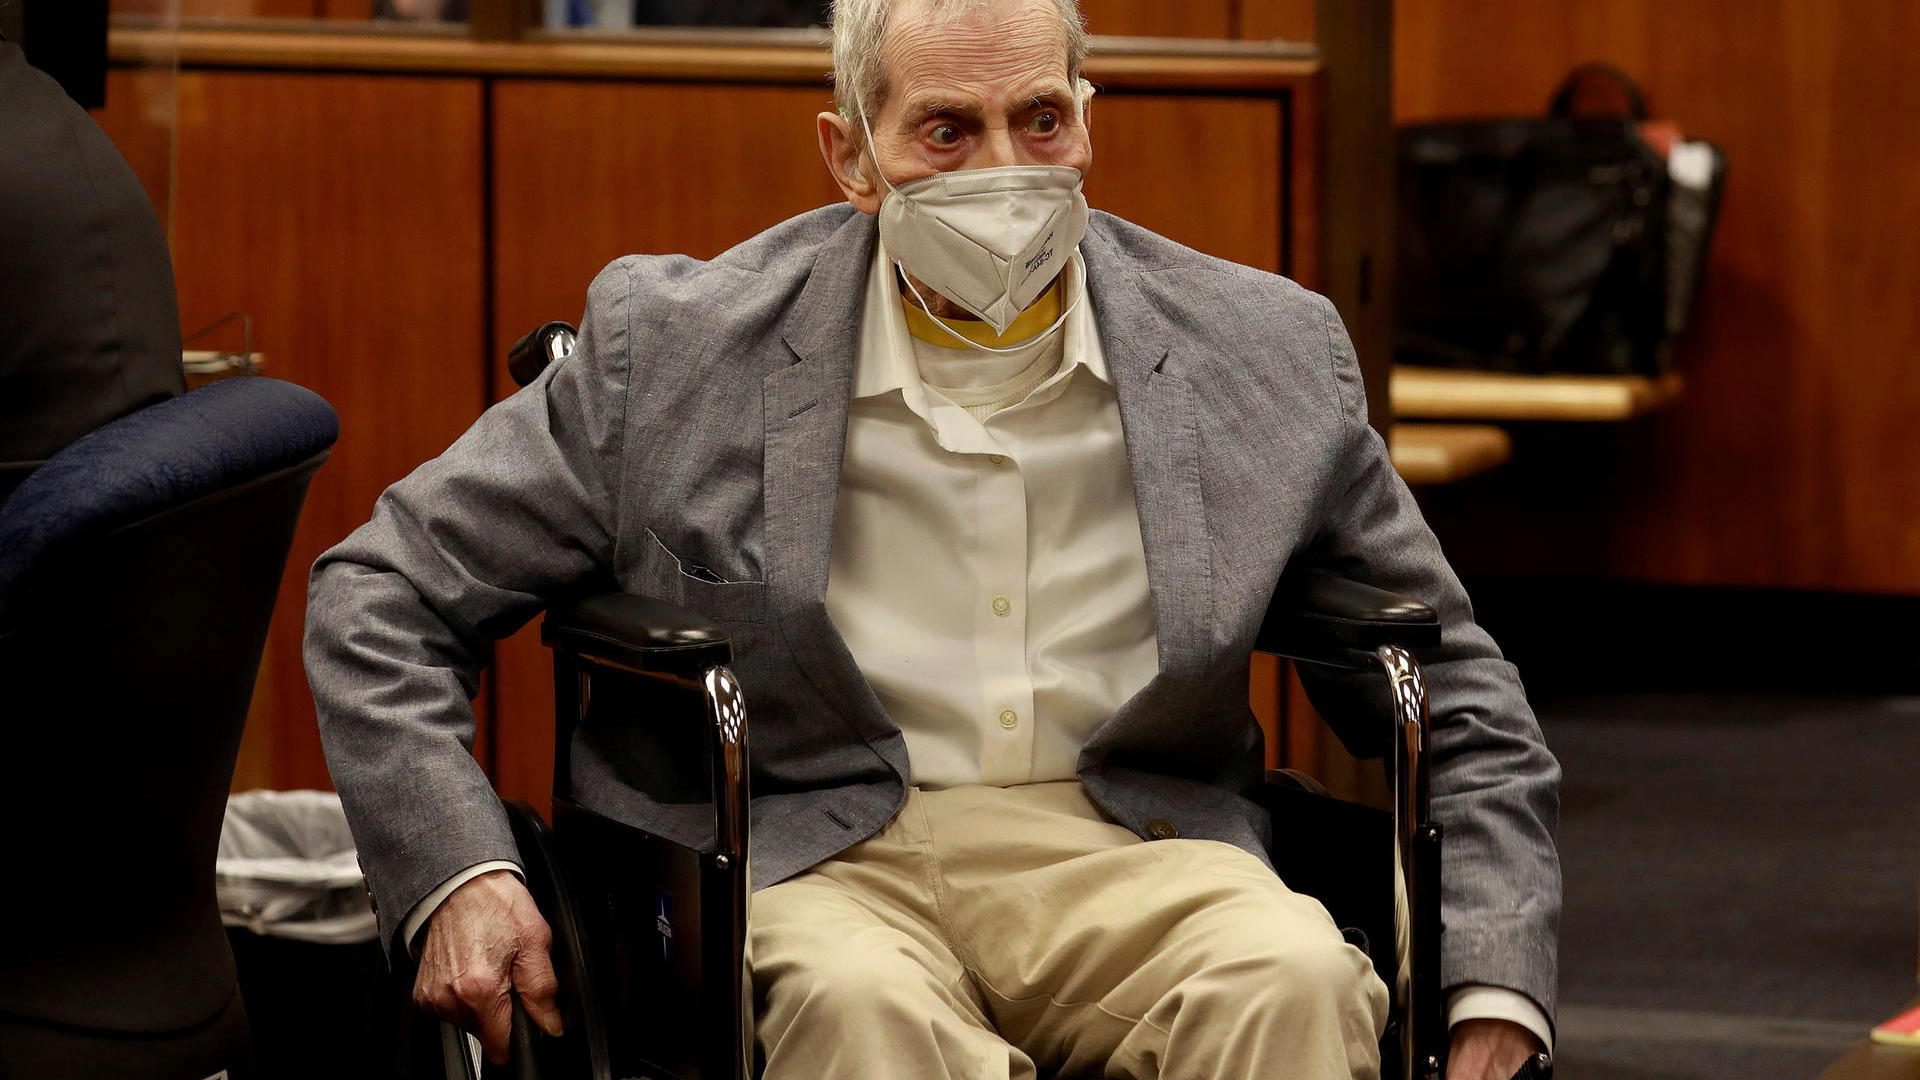 Robert Durst: US millionaire sentenced to life for murder